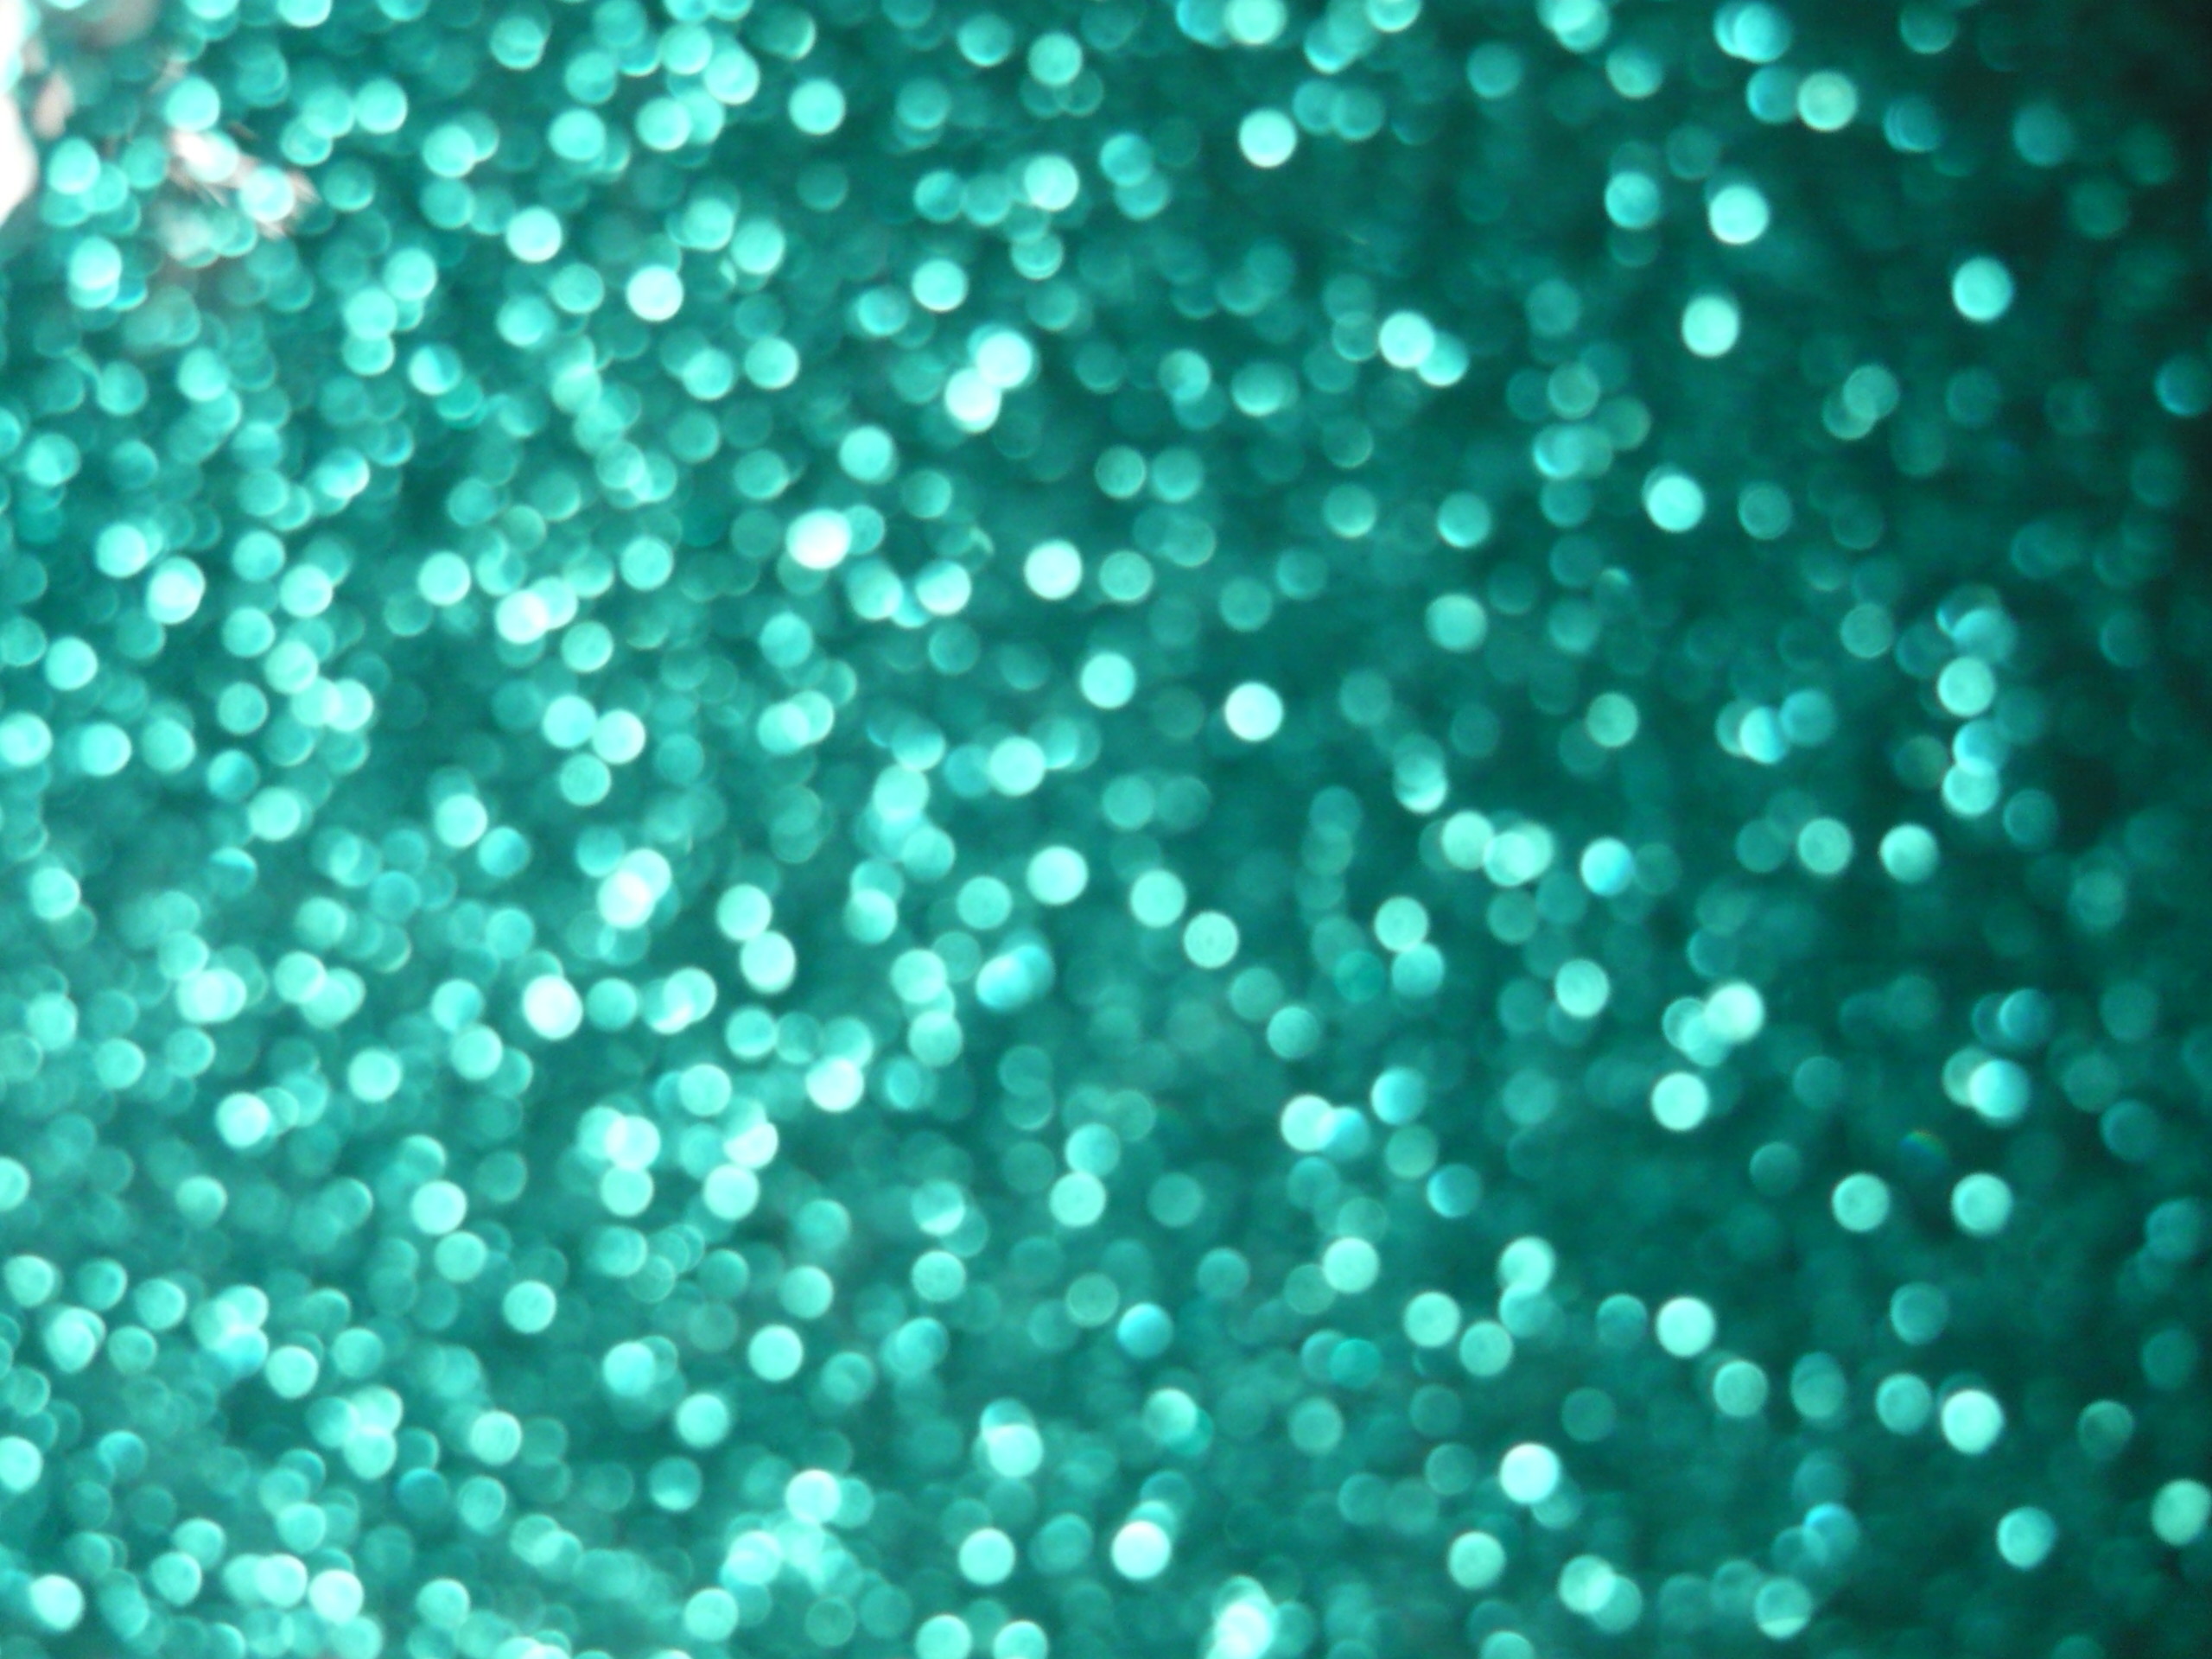 2560x1920 Glitter Backgrounds wallpaper Blue Glitter Backgrounds hd wallpaper  